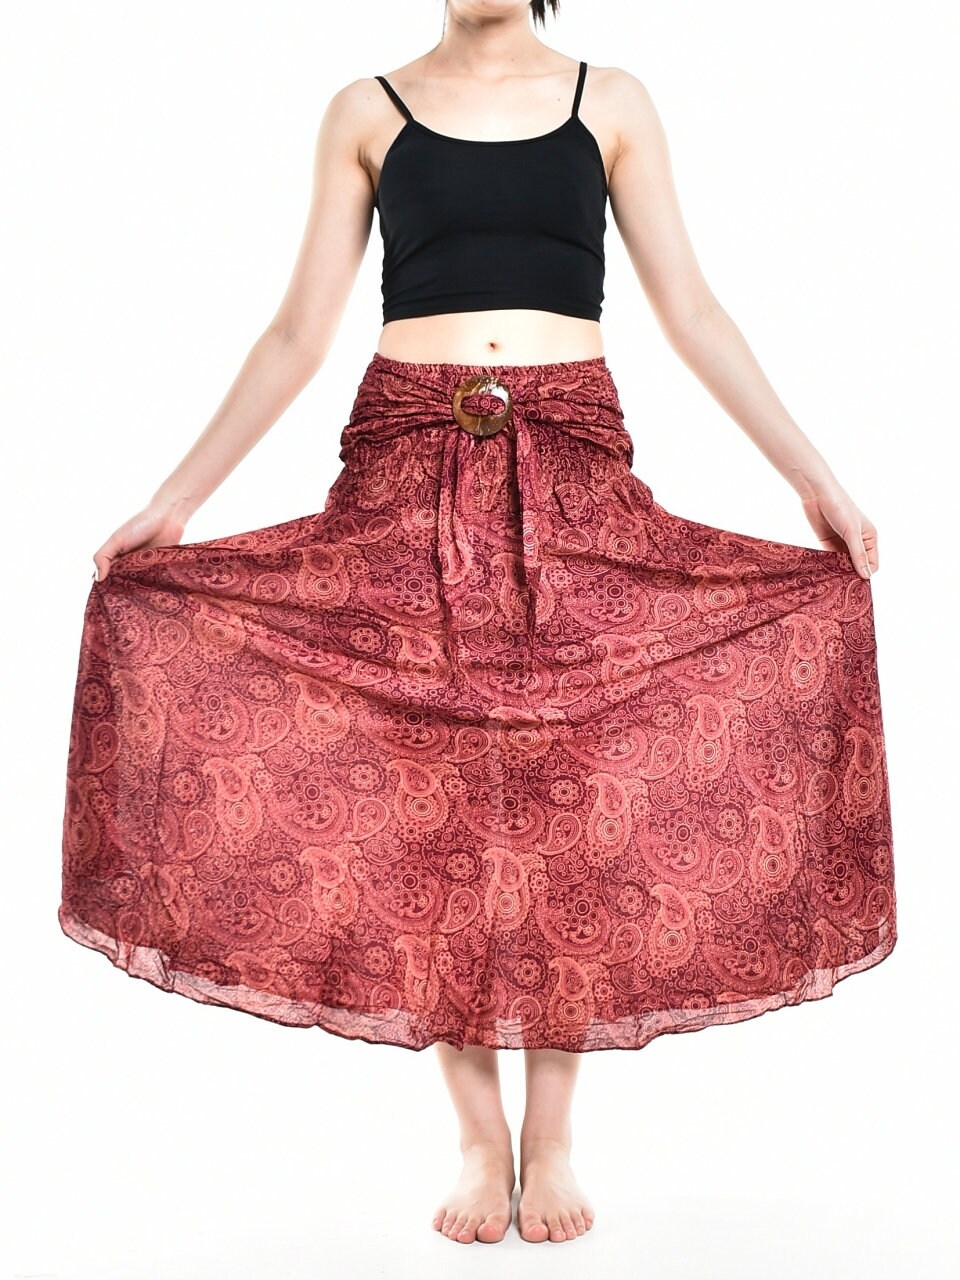 Long Skirt / Boho Skirt / Maxi Skirt / Bright Pink Skirt / Full